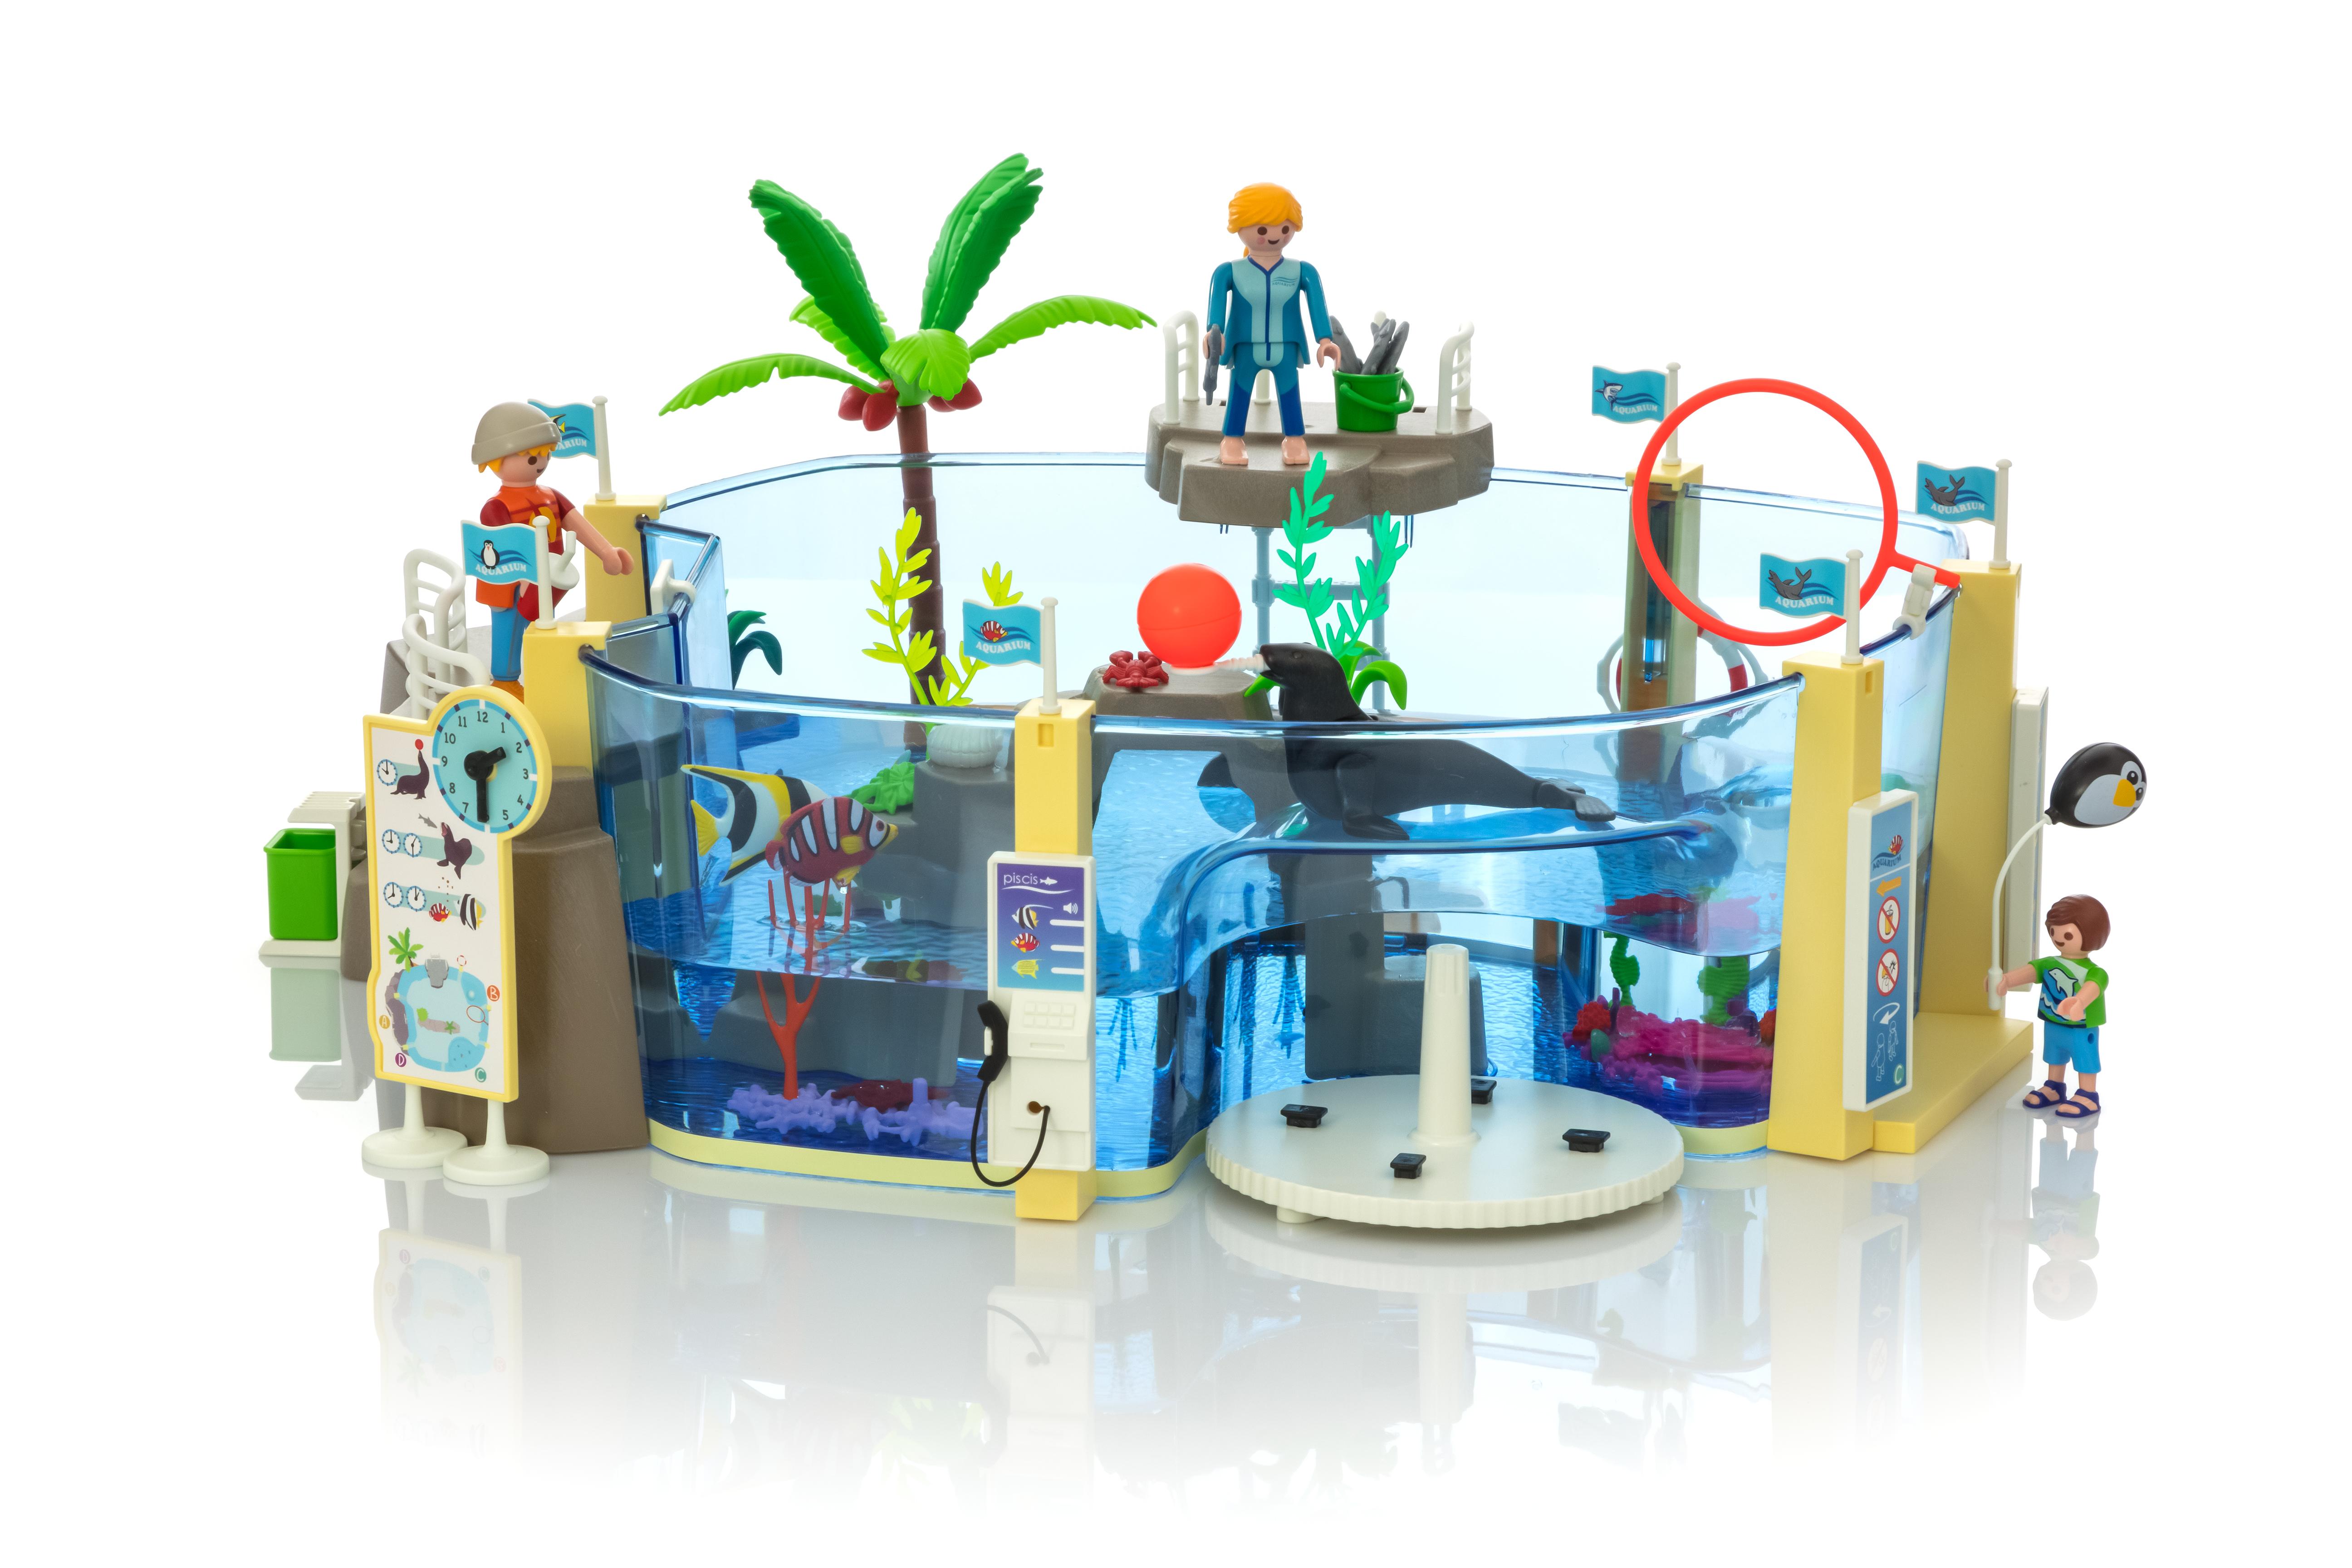 aquarium playmobil